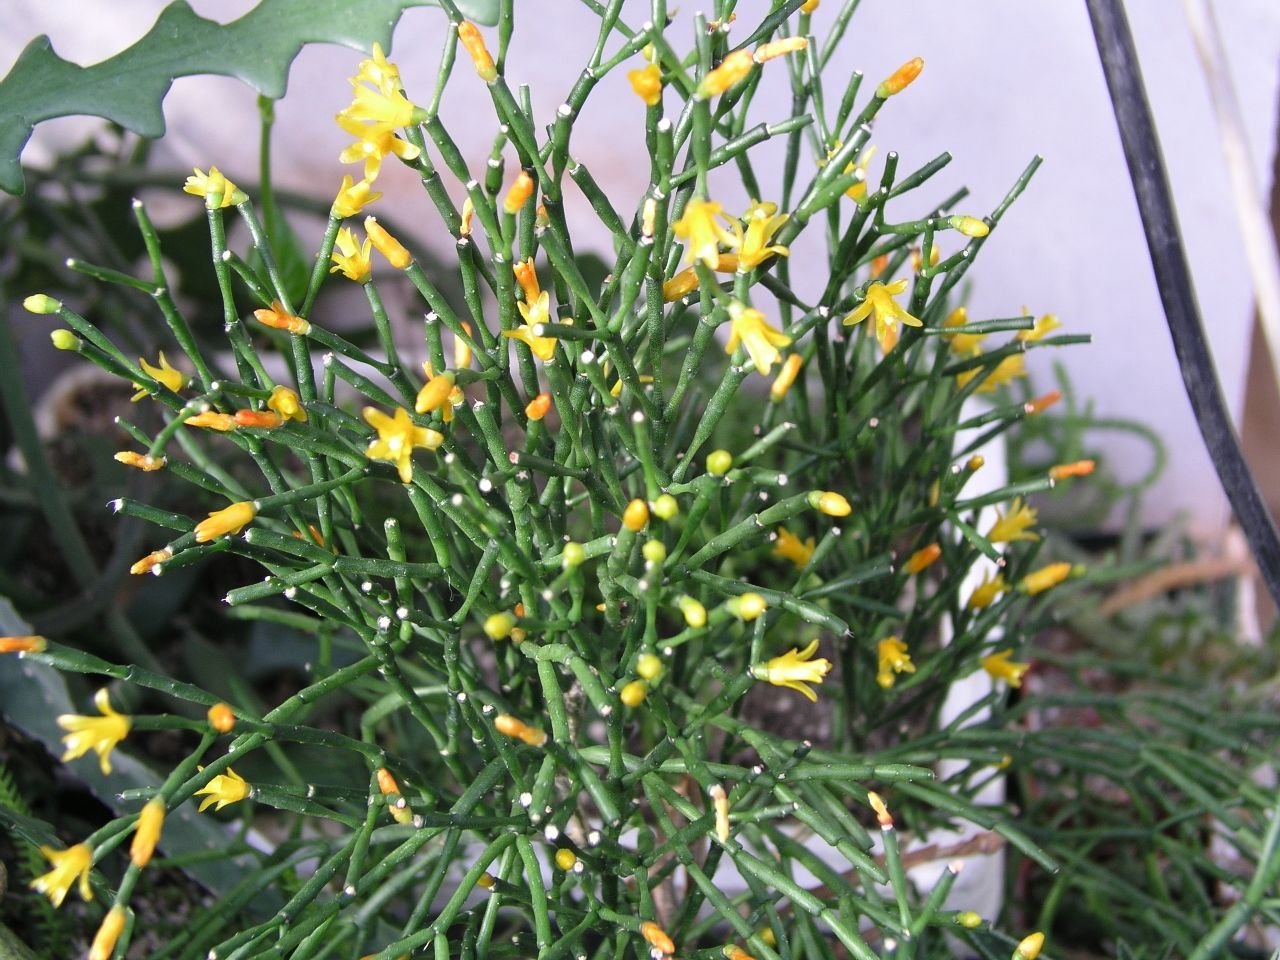 Комнатный цветок цветет желтым. Хатиора солеросовая. Цветок хатиора солеросовая. Хатиора солянковидная Hatiora salicornioides. Хатиора Оленьи рожки.